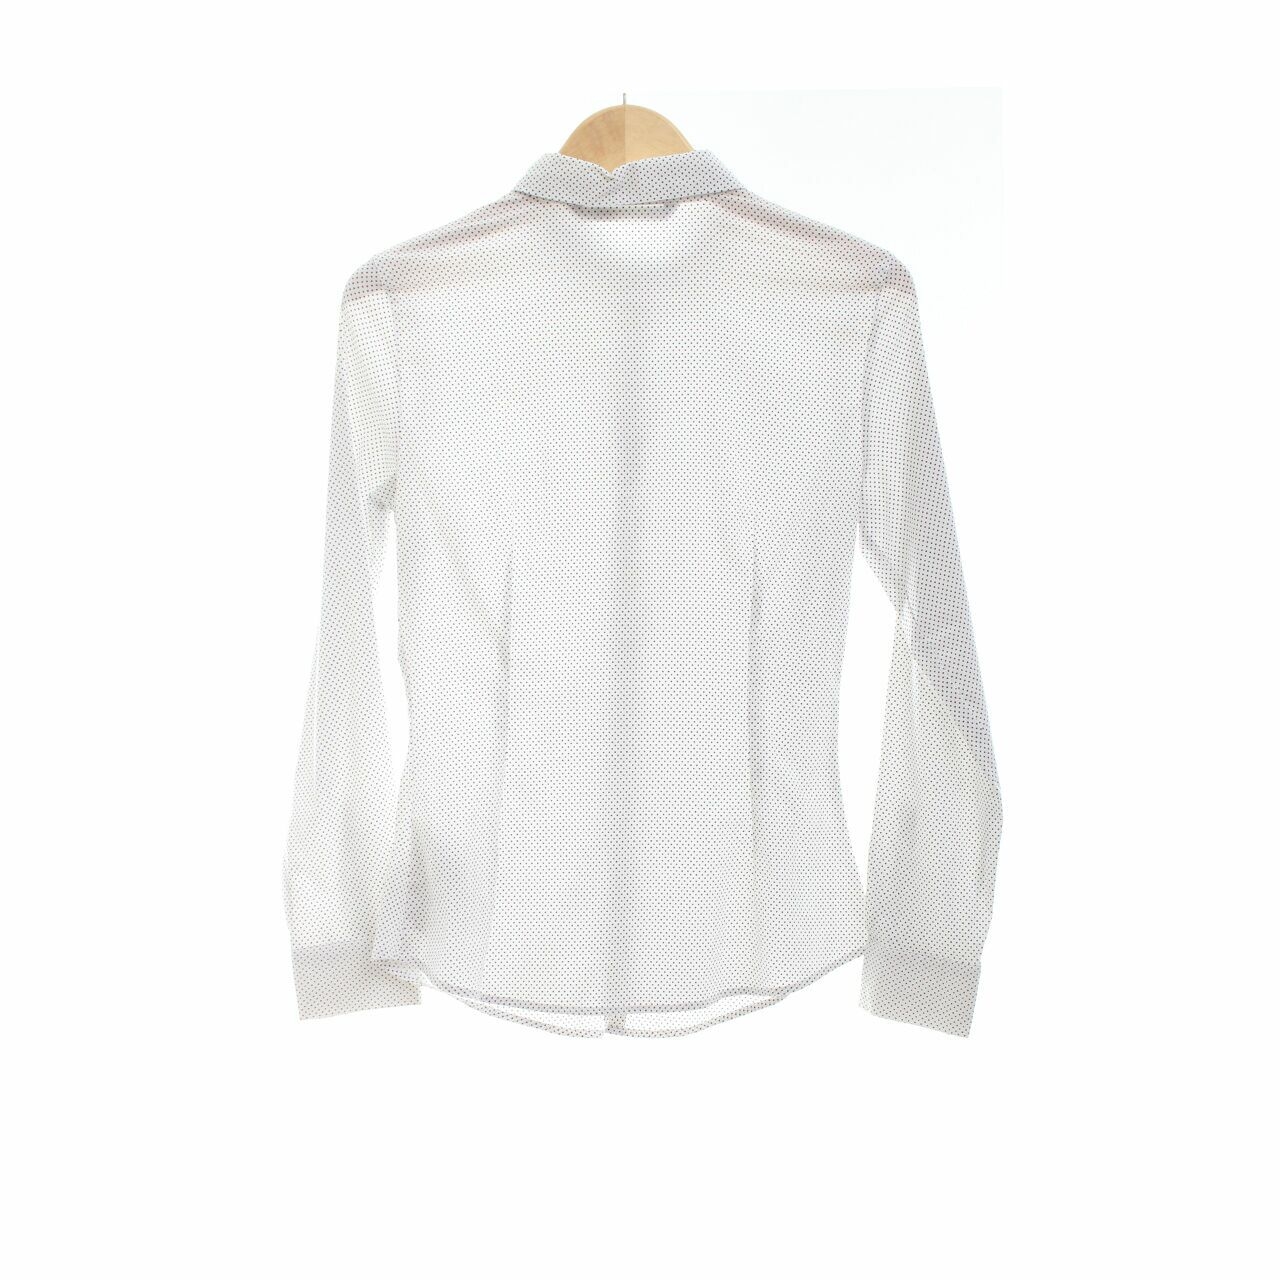 Zara White Polkadots Shirt